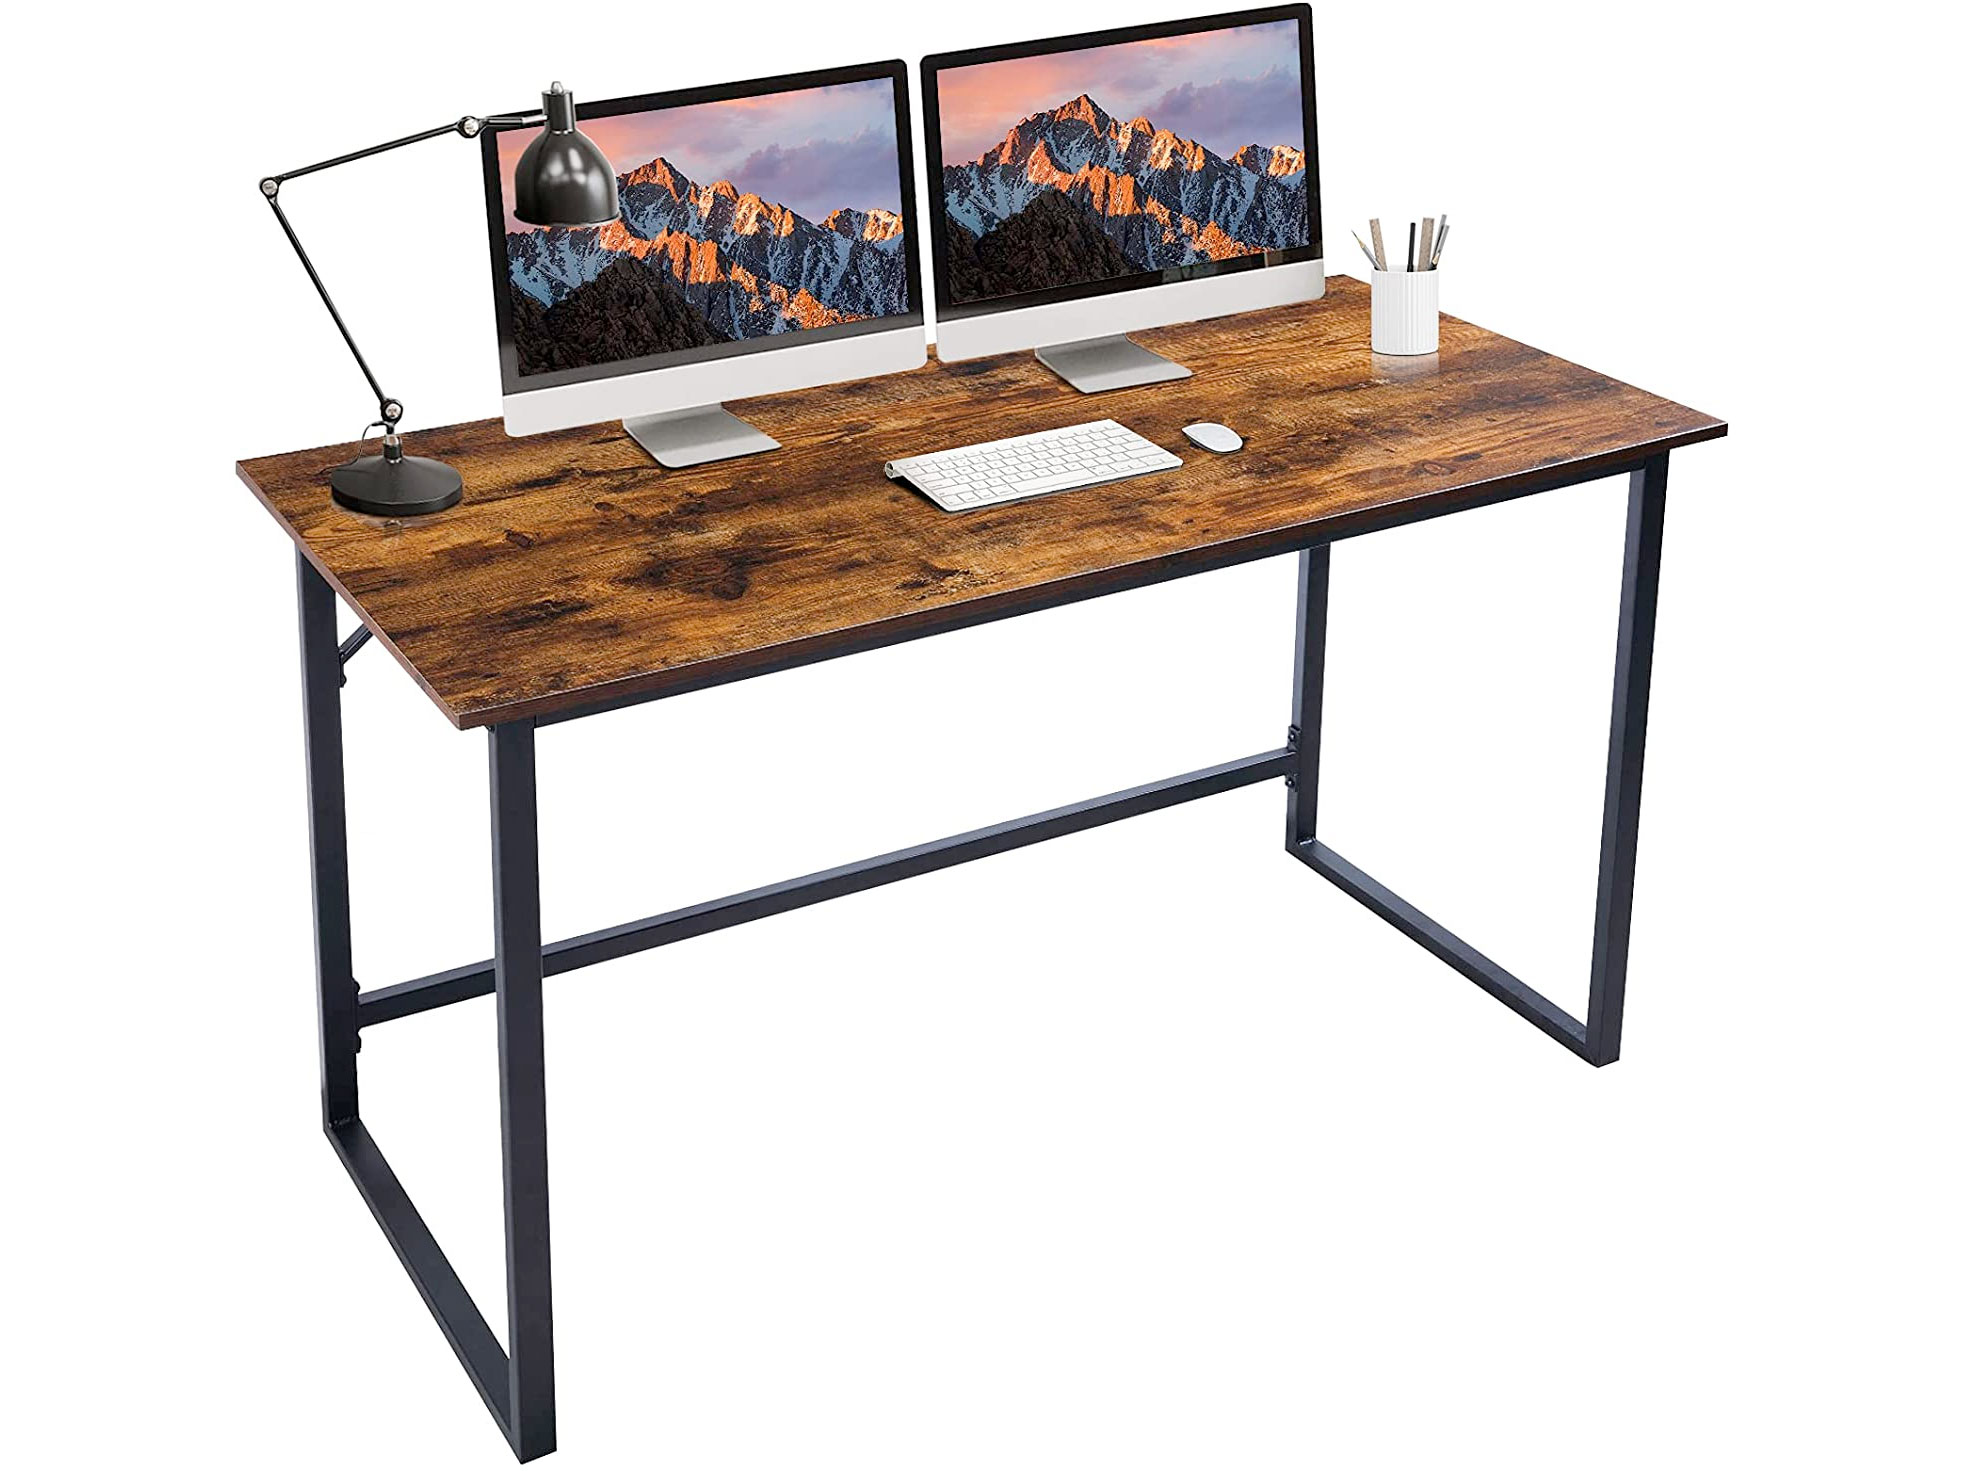 Amazon：47″ Computer Desk只賣$44.85